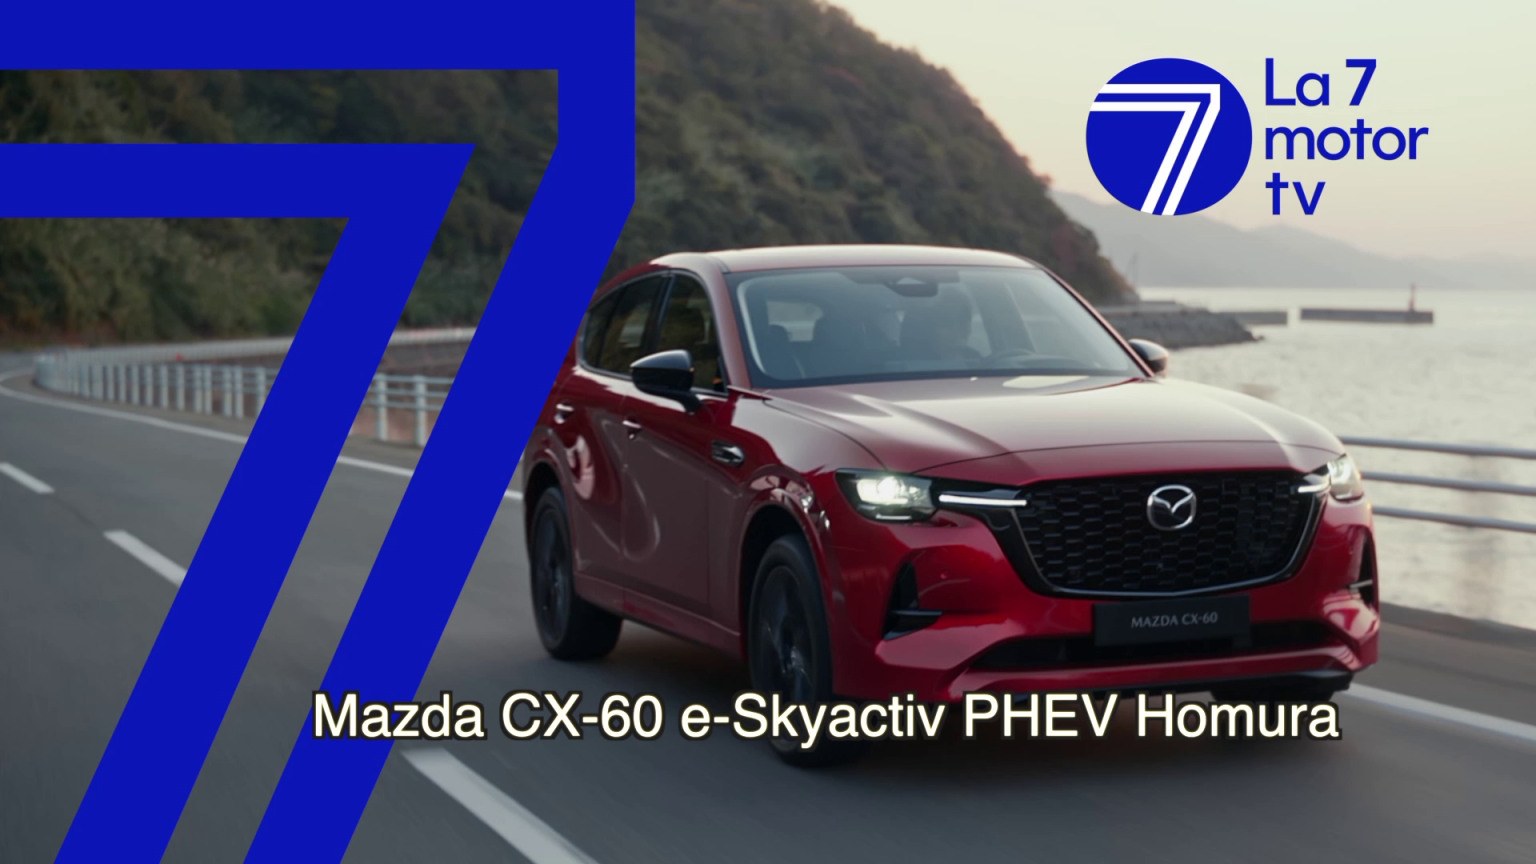 Mazda CX-60 e-Skyactiv PHEV Homura: SUV de tamaño grande, híbrido enchufable y con calidad